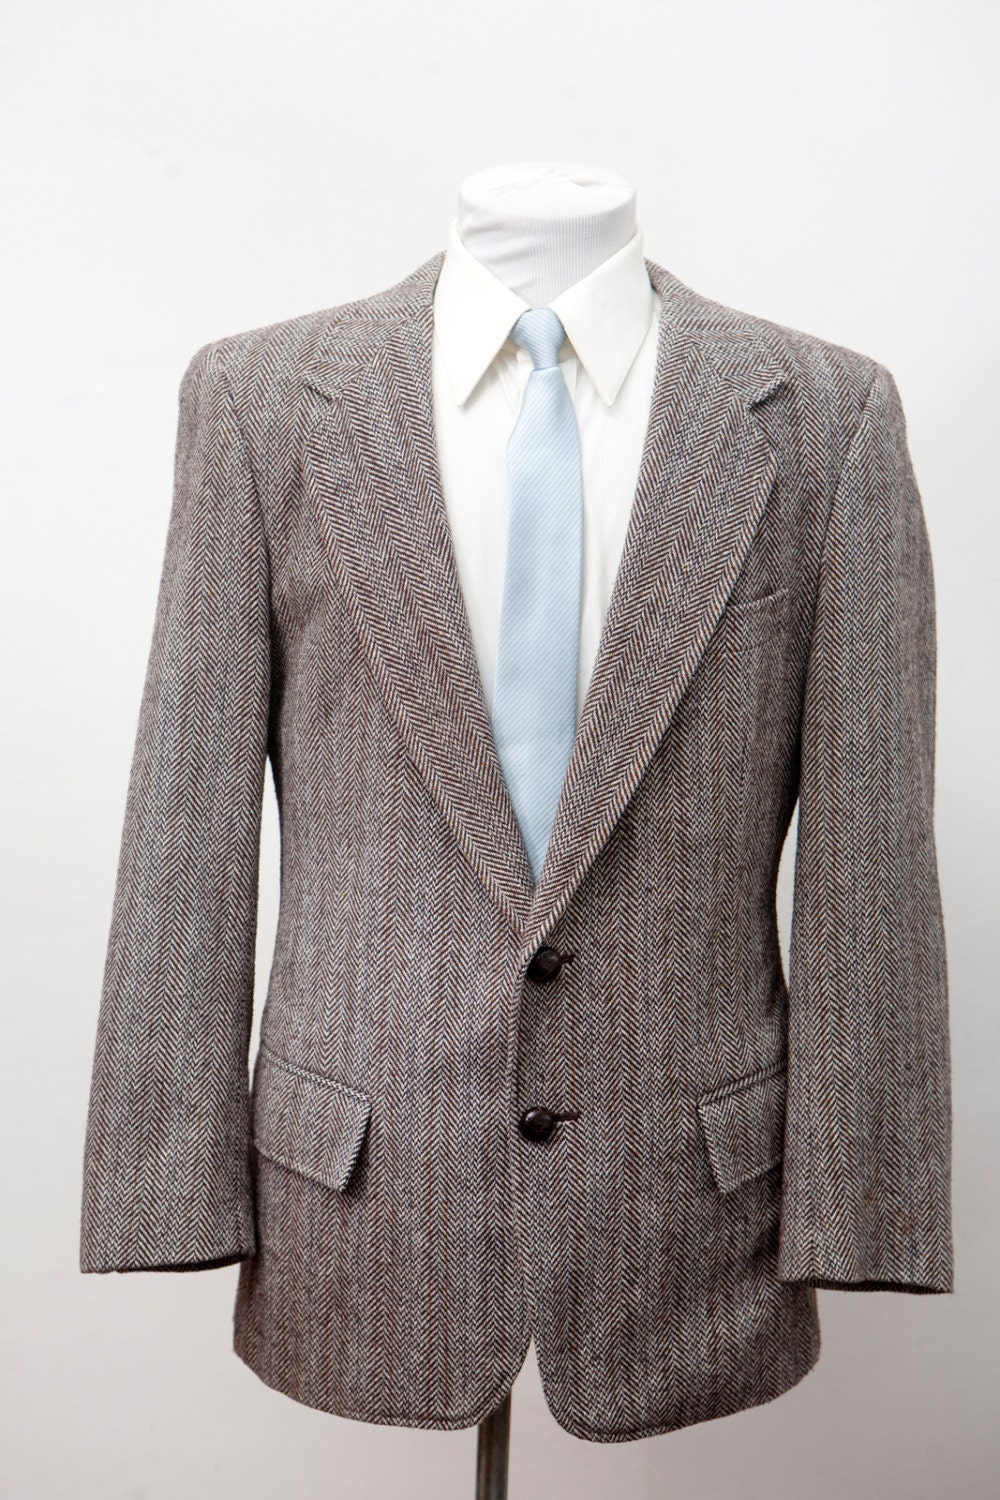 Men's Blazer / Vintage Tweed Herringbone Jacket / Size 40 - Etsy